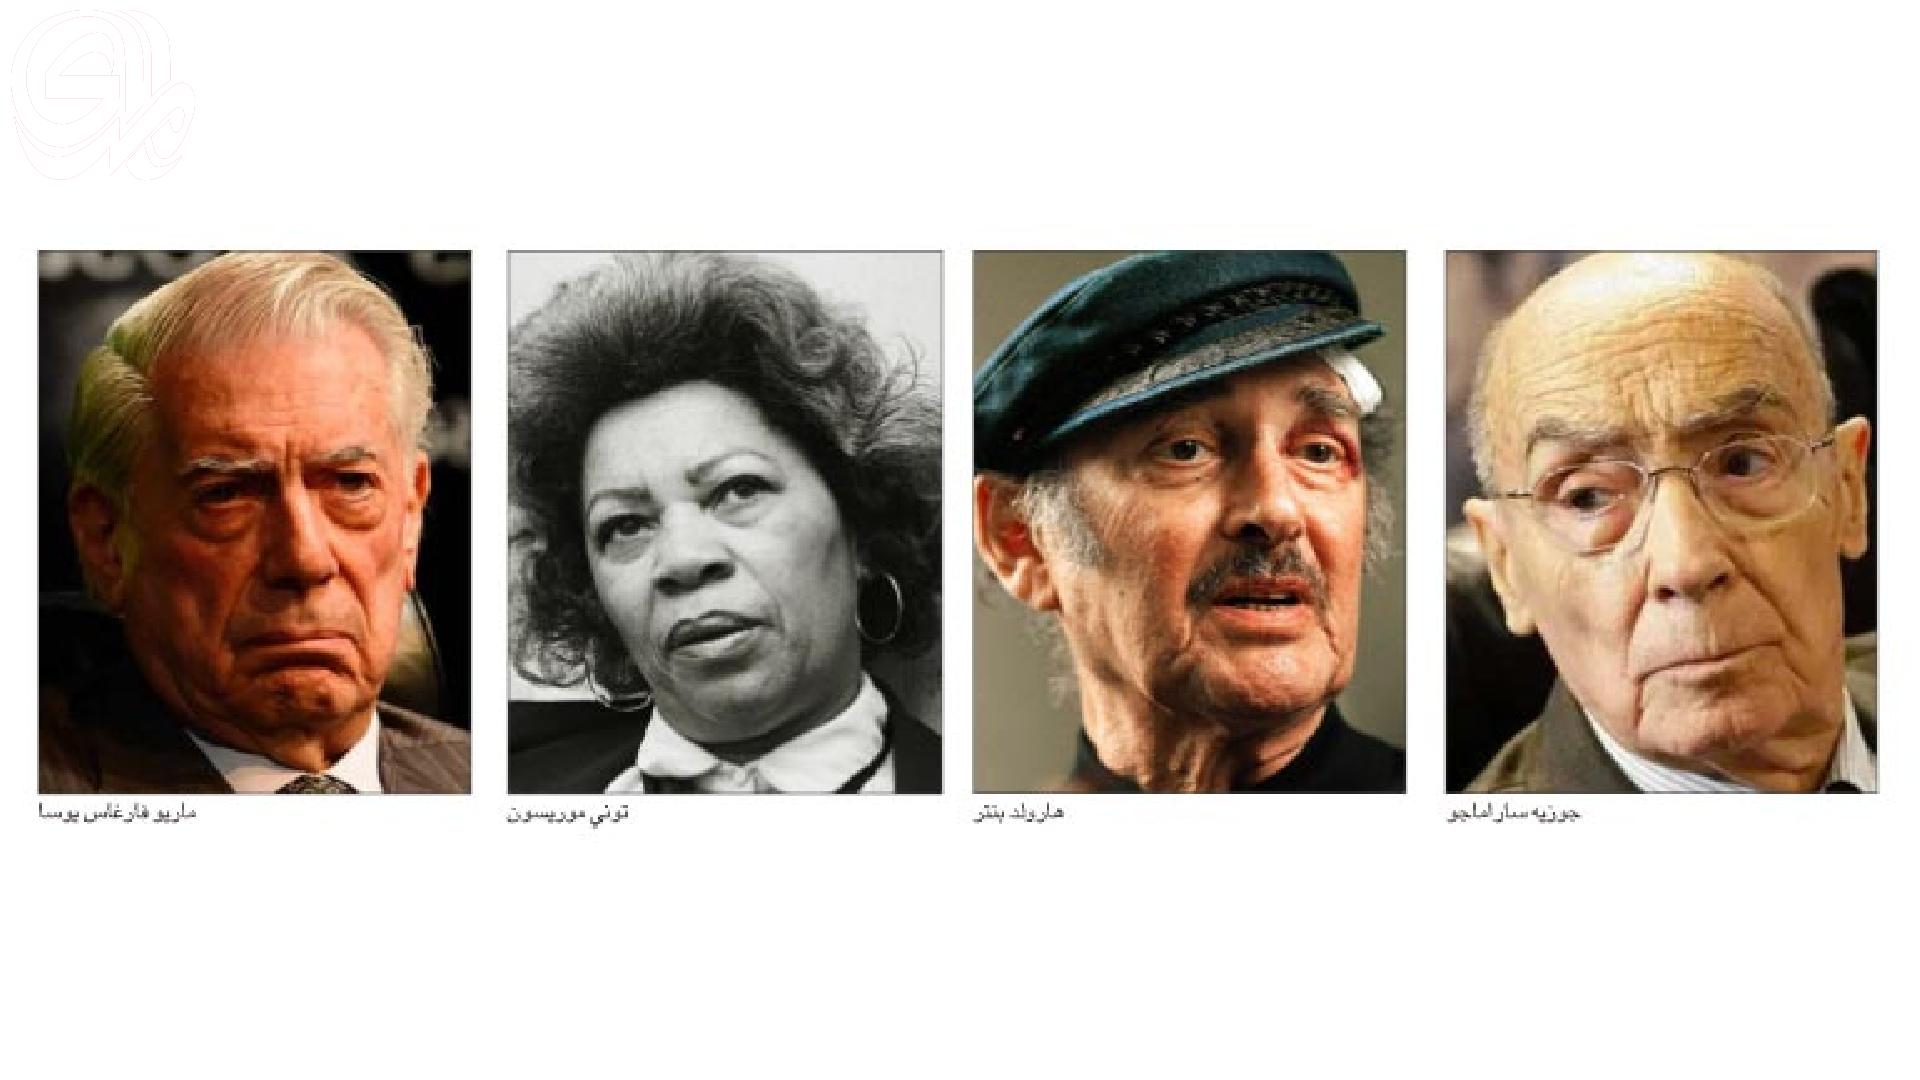 أدباء نوبل الذين تخشاهم إسرائيل